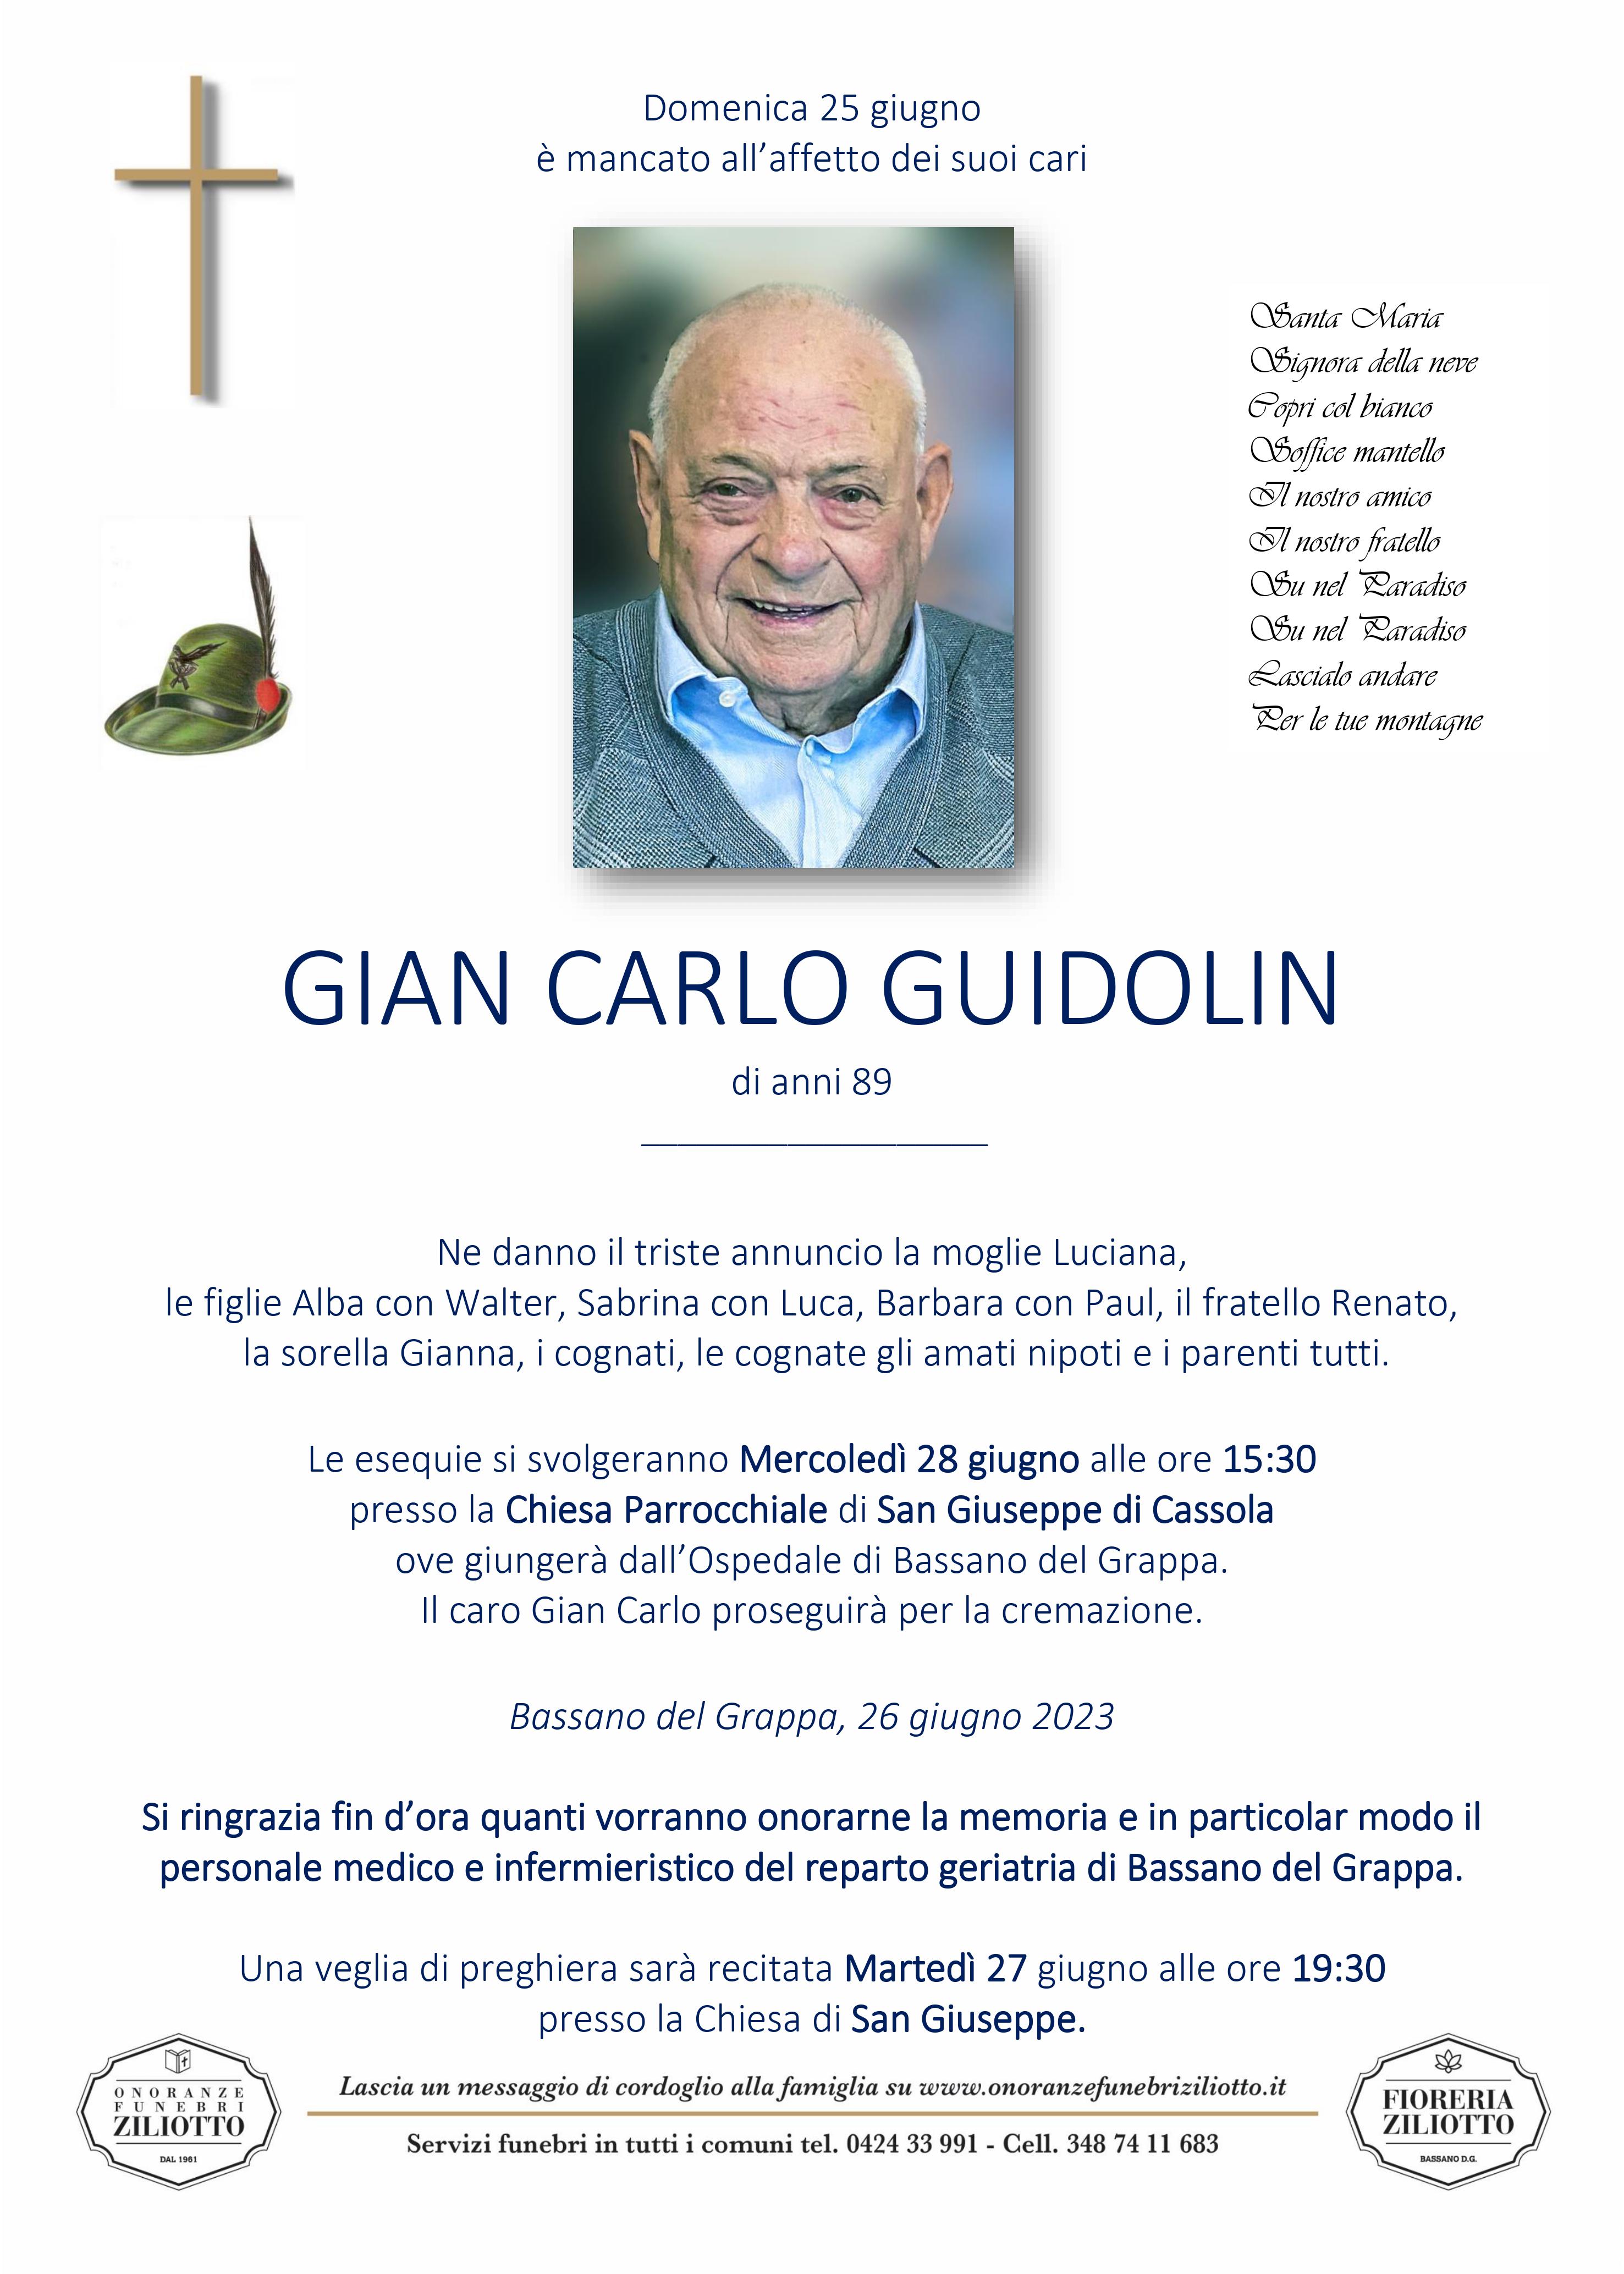 Gian Carlo Guidolin - 89 anni - Bassano del Grappa